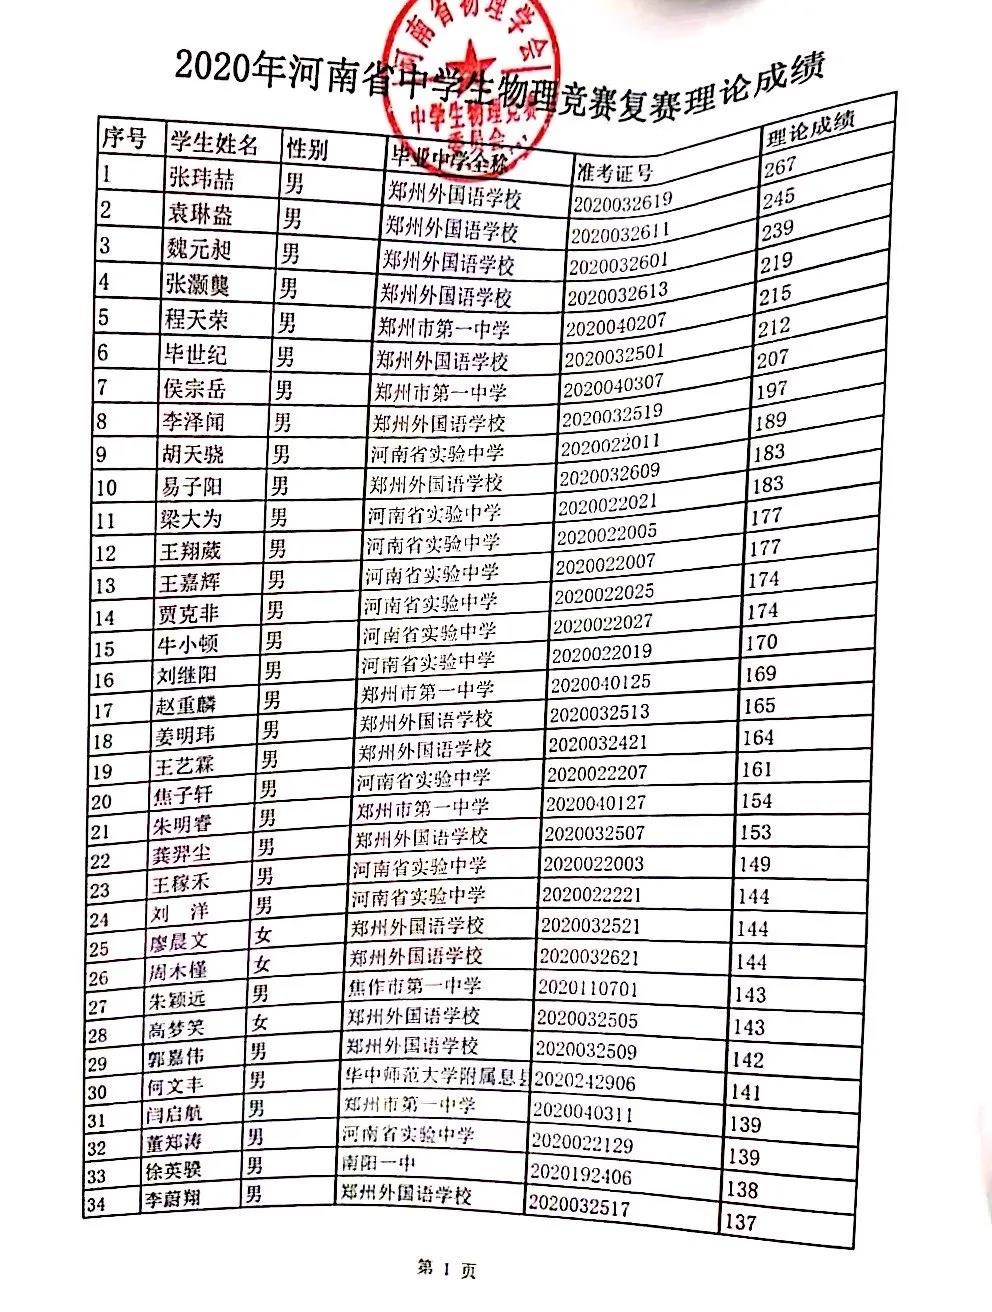 河南省2020年第37届中学生物理竞赛复赛理论成绩（前34名）